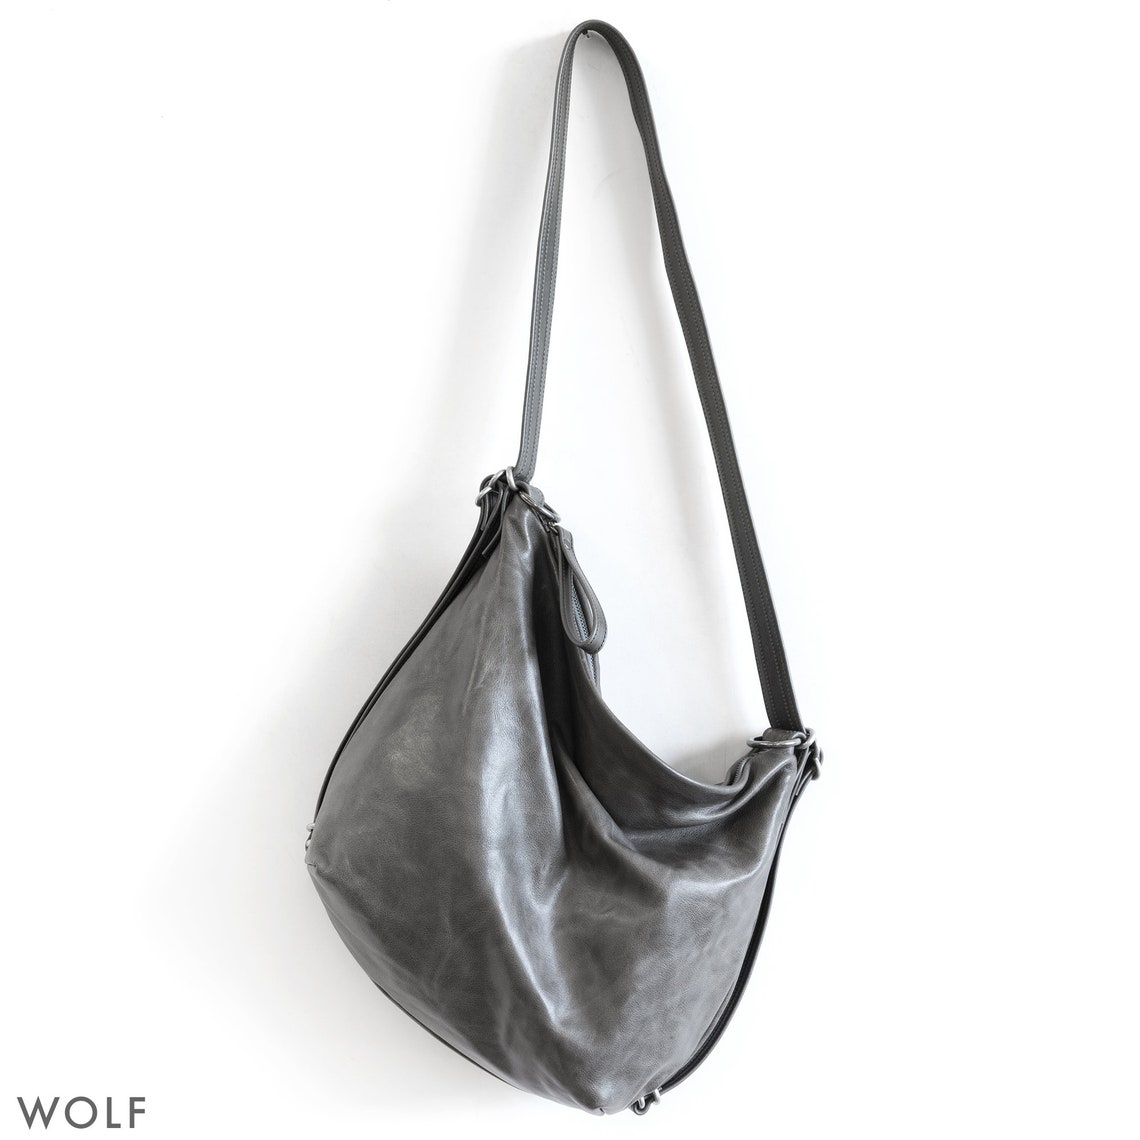 3-in-1 Hobo Pack adjustable backpack shoulder bag leather | Etsy